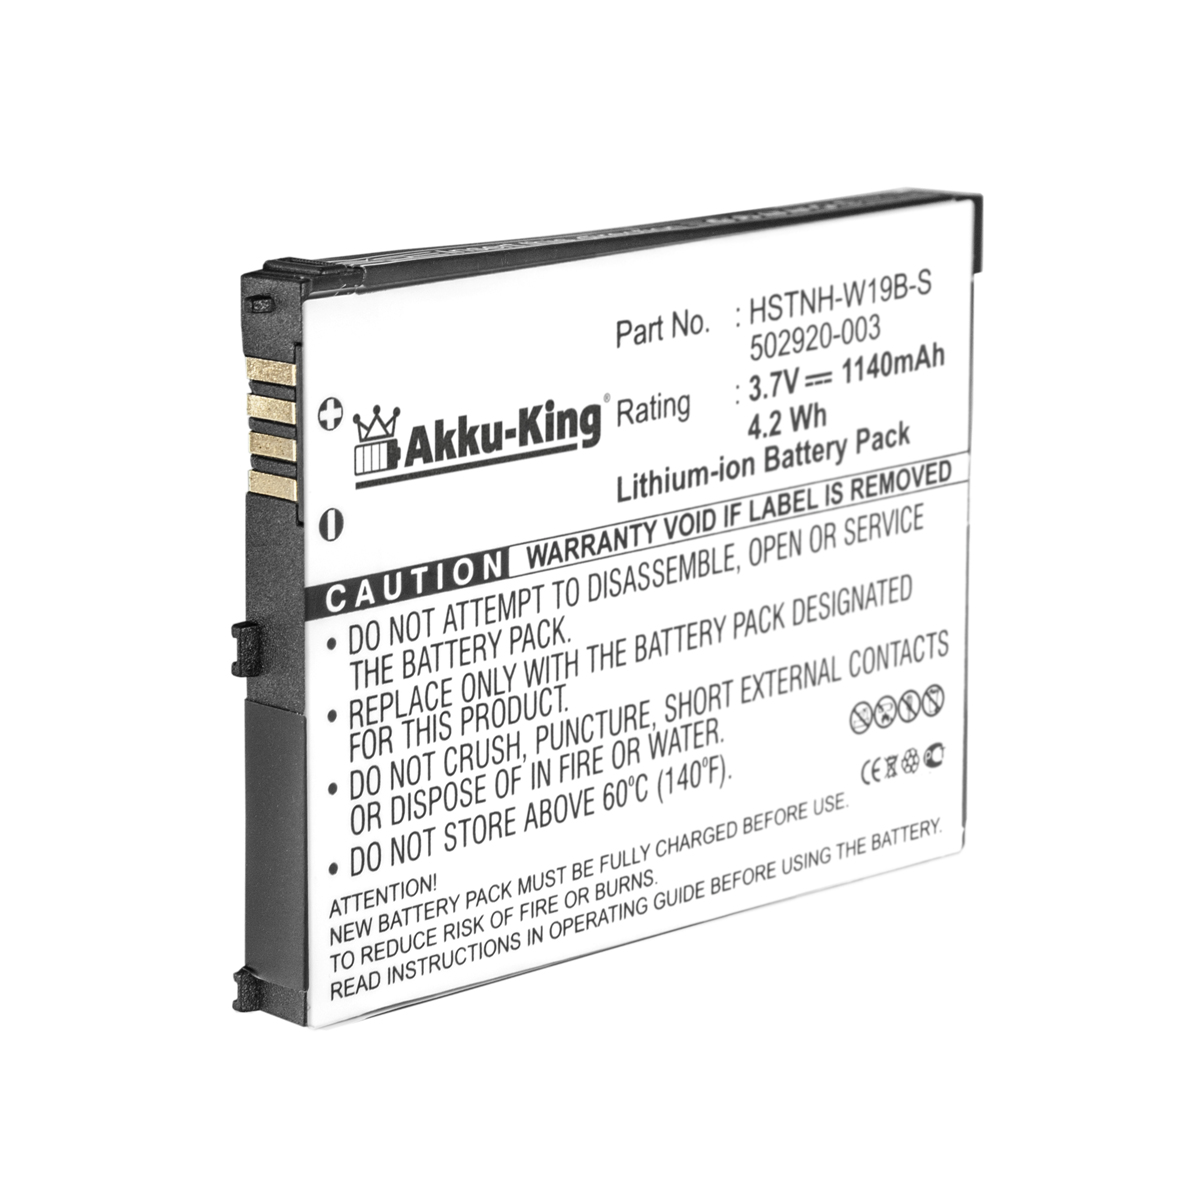 kompatibel Li-Ion 1140mAh 3.7 Akku 490165-001 HP AKKU-KING mit Volt, Handy-Akku,